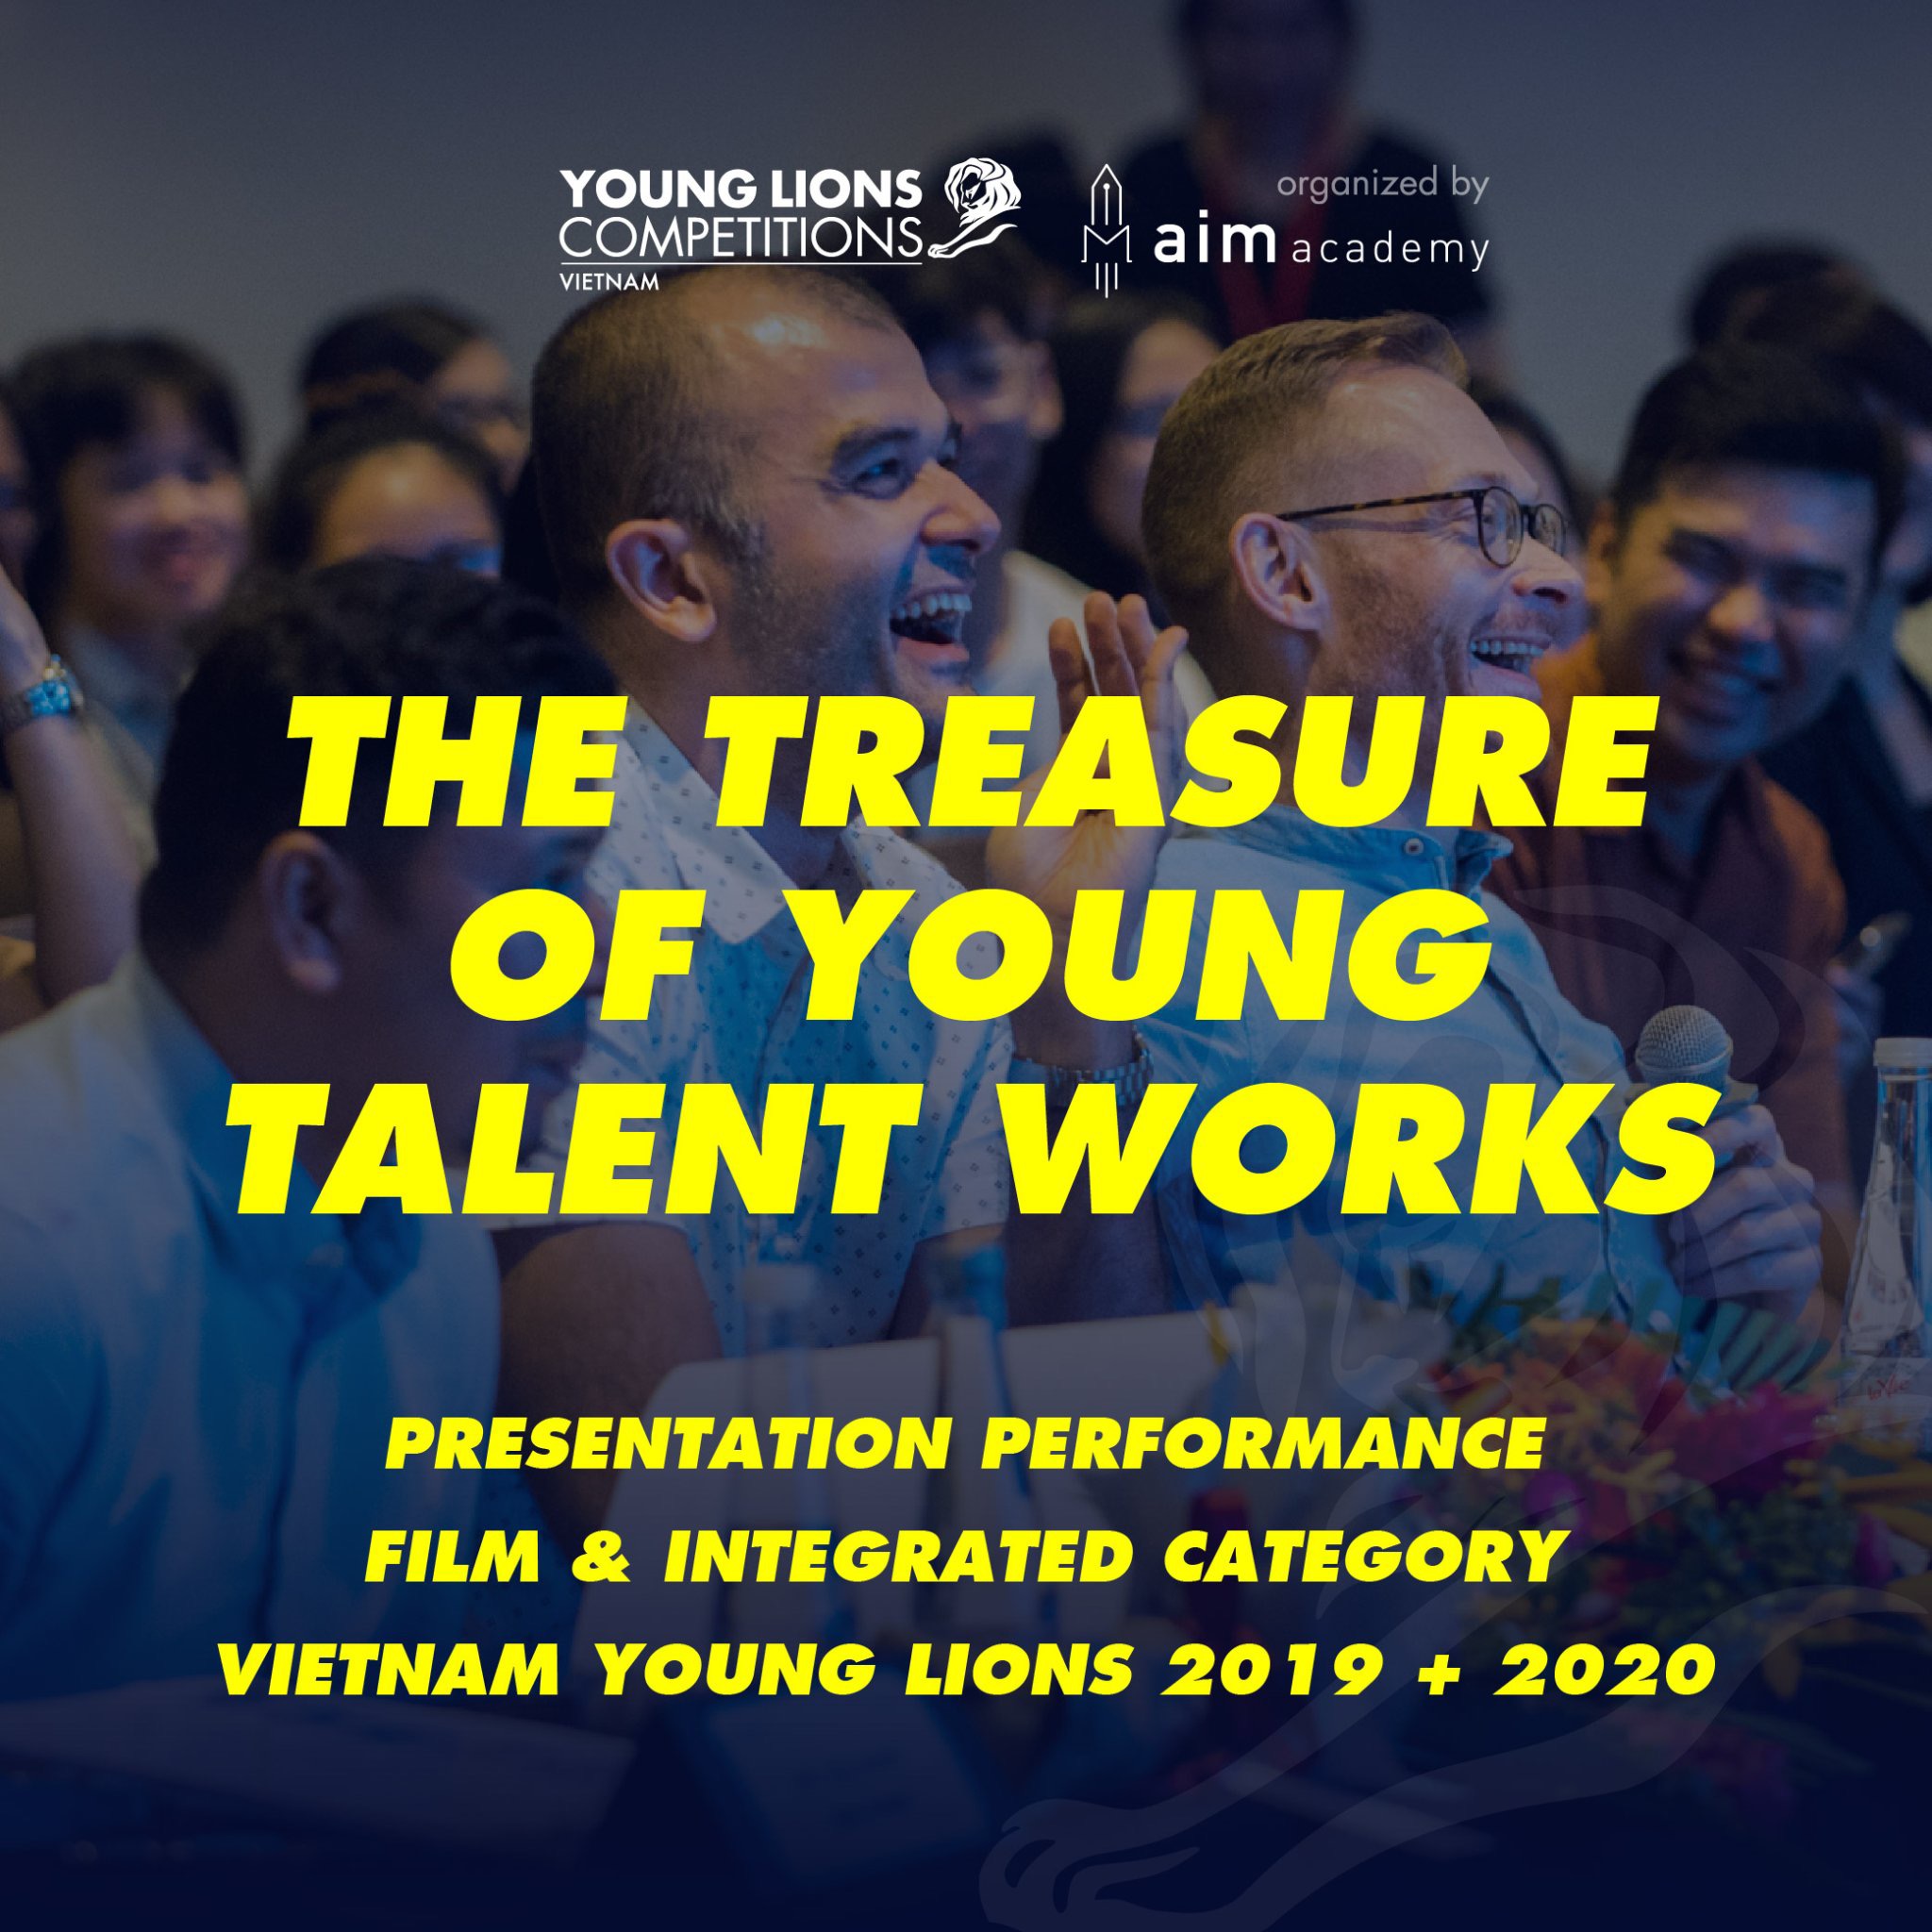 Tài Liệu Marketing - Gói Premium - Bài Thi Vietnam Young Lions 2019 + 2020 - Contestant Presentation Performance - Hạng Mục Film & Integrated - Chuẩn quốc tế - Học mọi nơi - VYLCP28- Khóa học online - [Độc Quyền AIM ACADEMY]